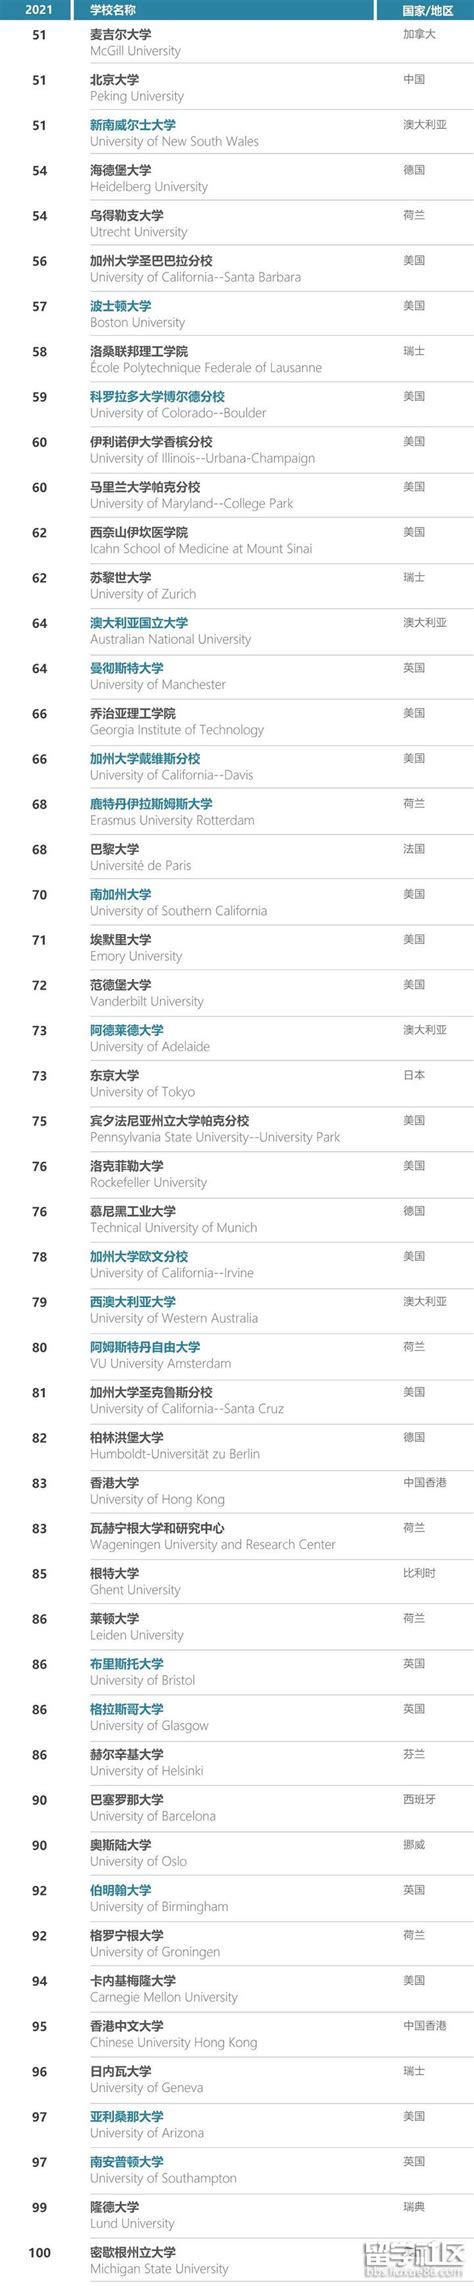 2020年收入排行_2020年世界大学排名出炉_中国排行网